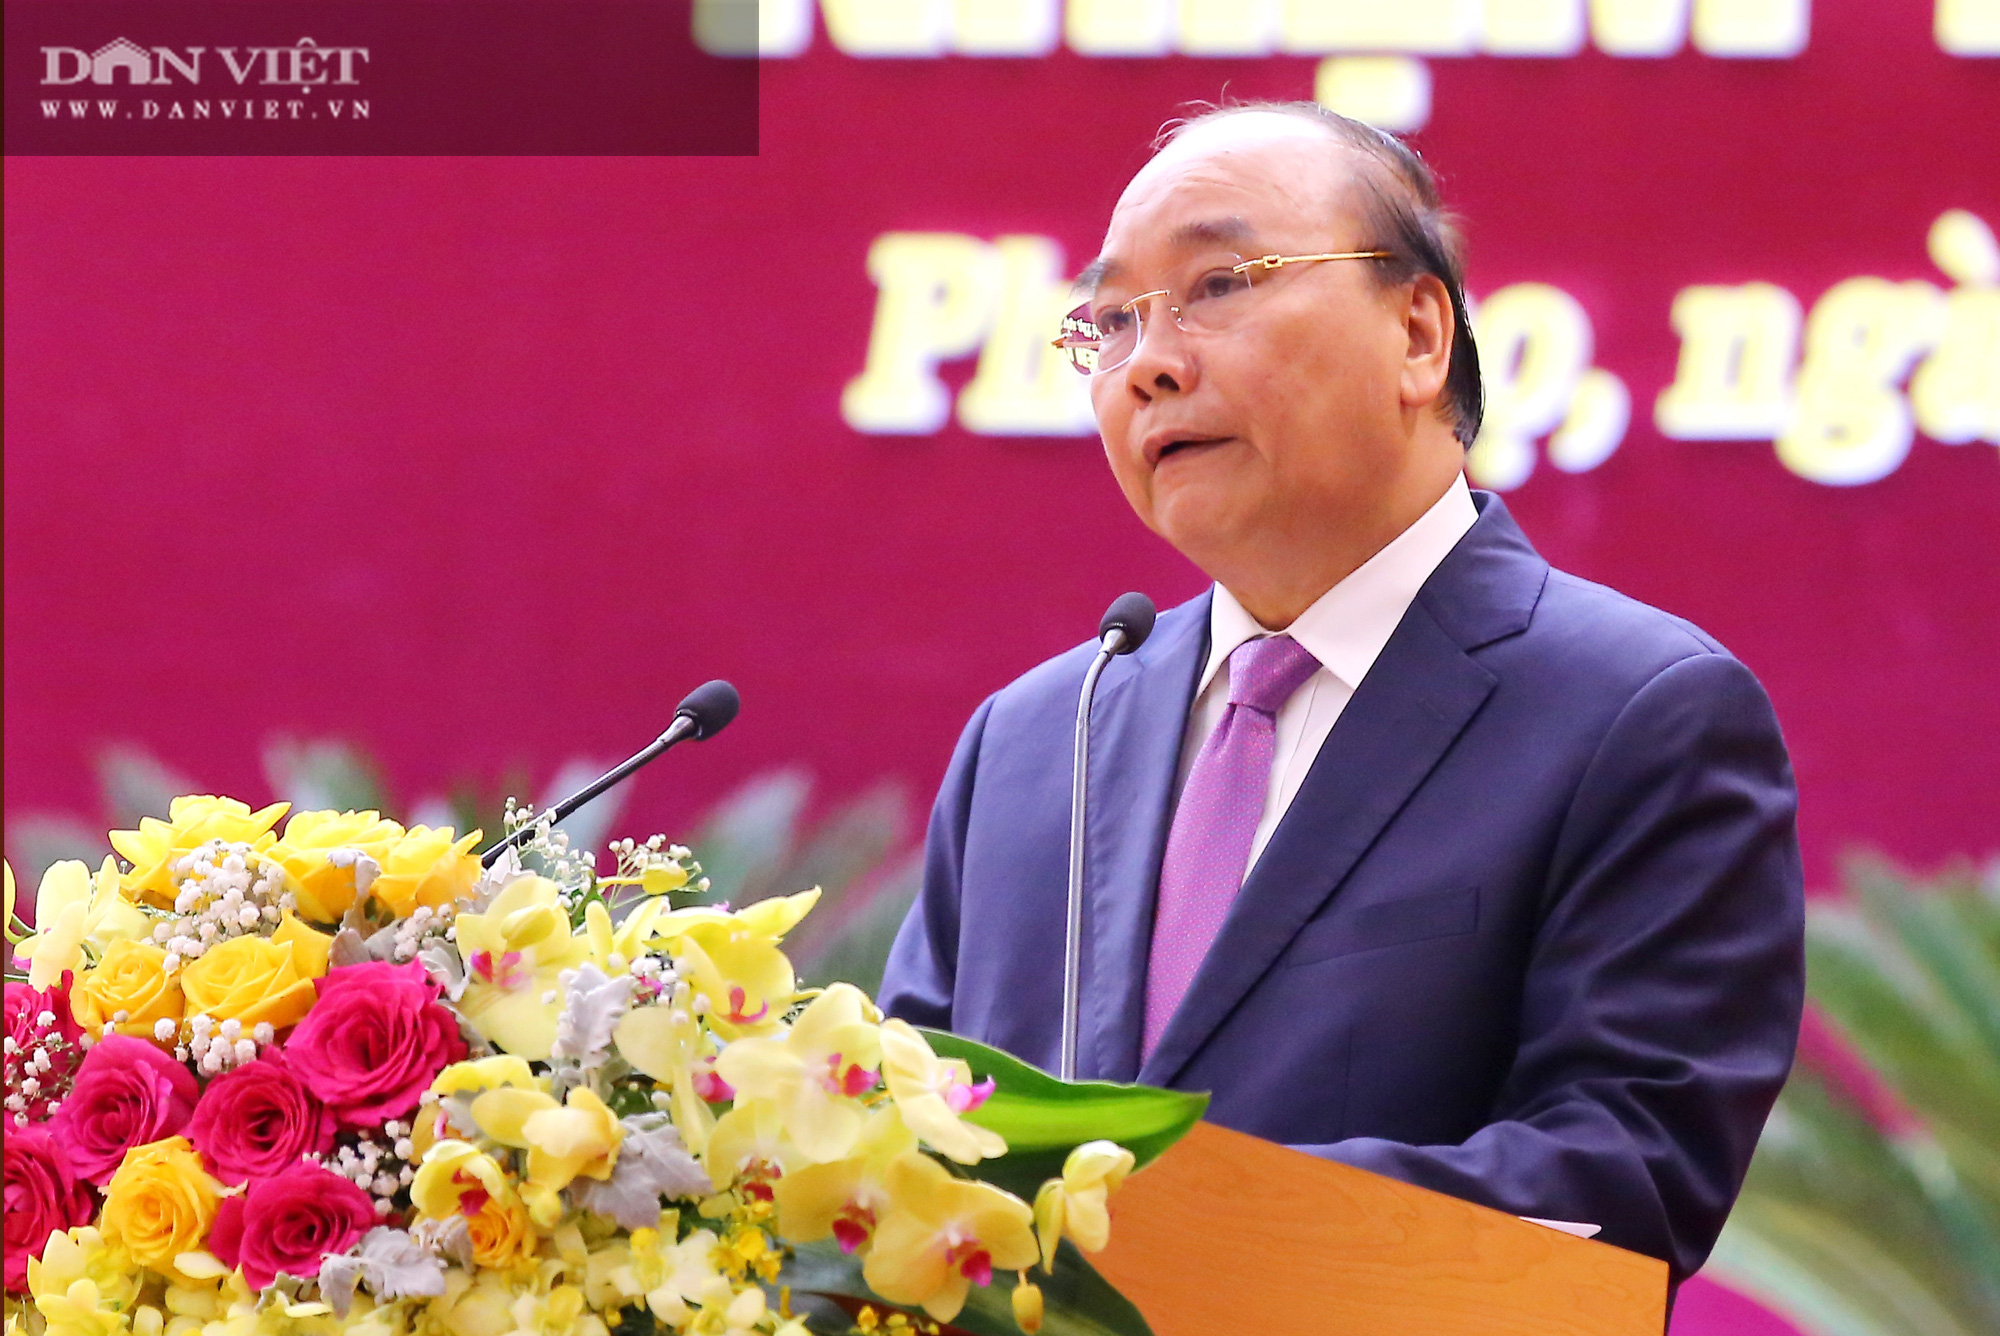 Thủ tướng Nguyễn Xuân Phúc: Phú Thọ có nhiều tiềm năng trở thành tỉnh phát triển hàng đầu trung du, miền núi phía Bắc - Ảnh 2.